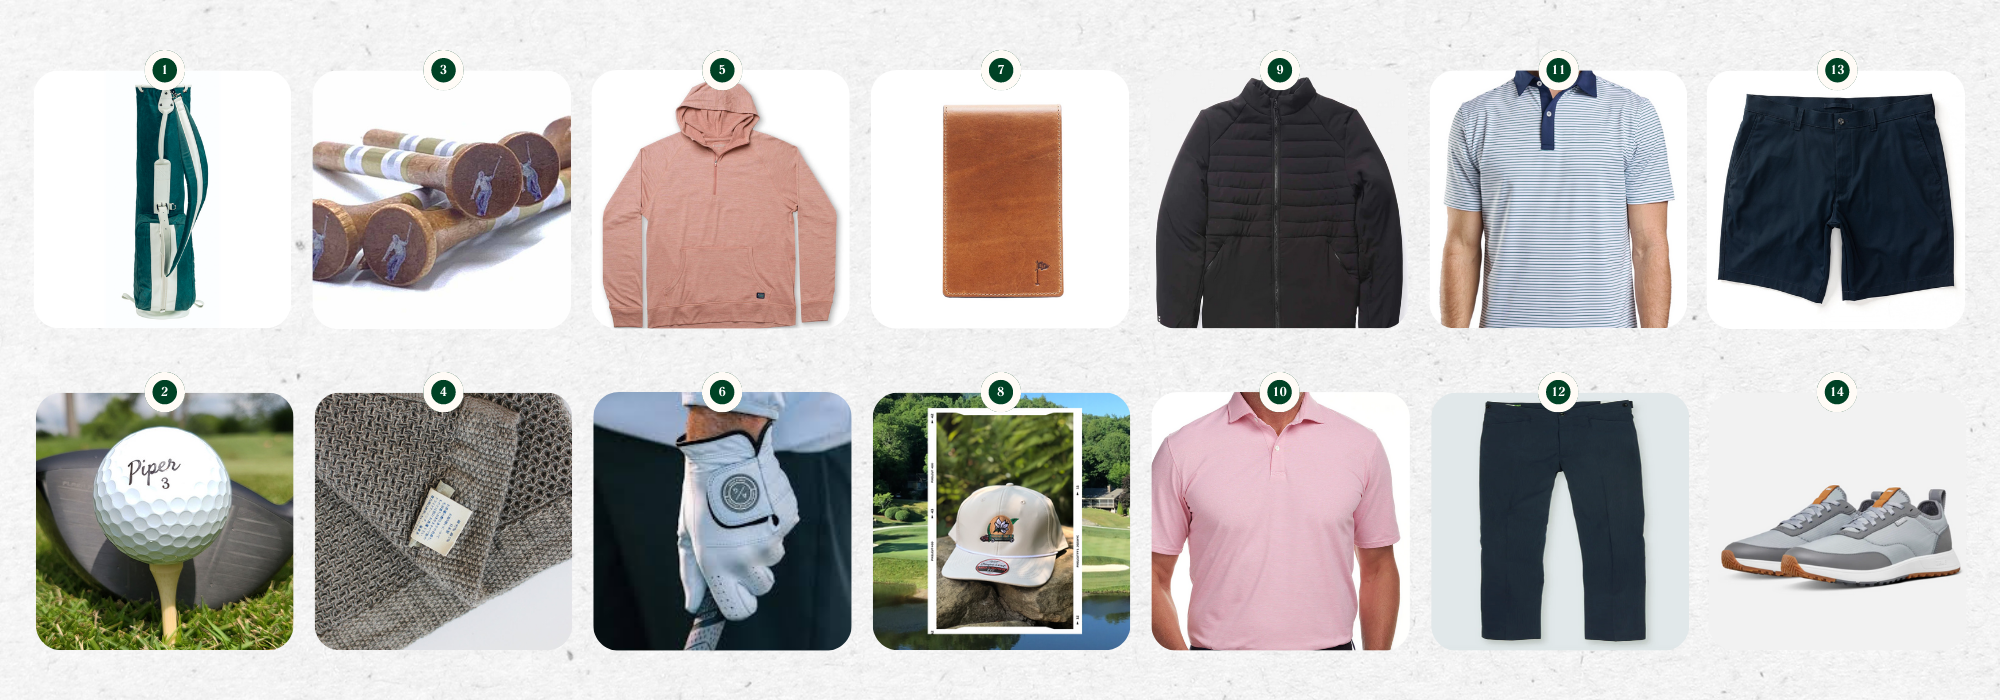 Magnolia League | Golf Trip Packing List | Golf Gear & Clothing